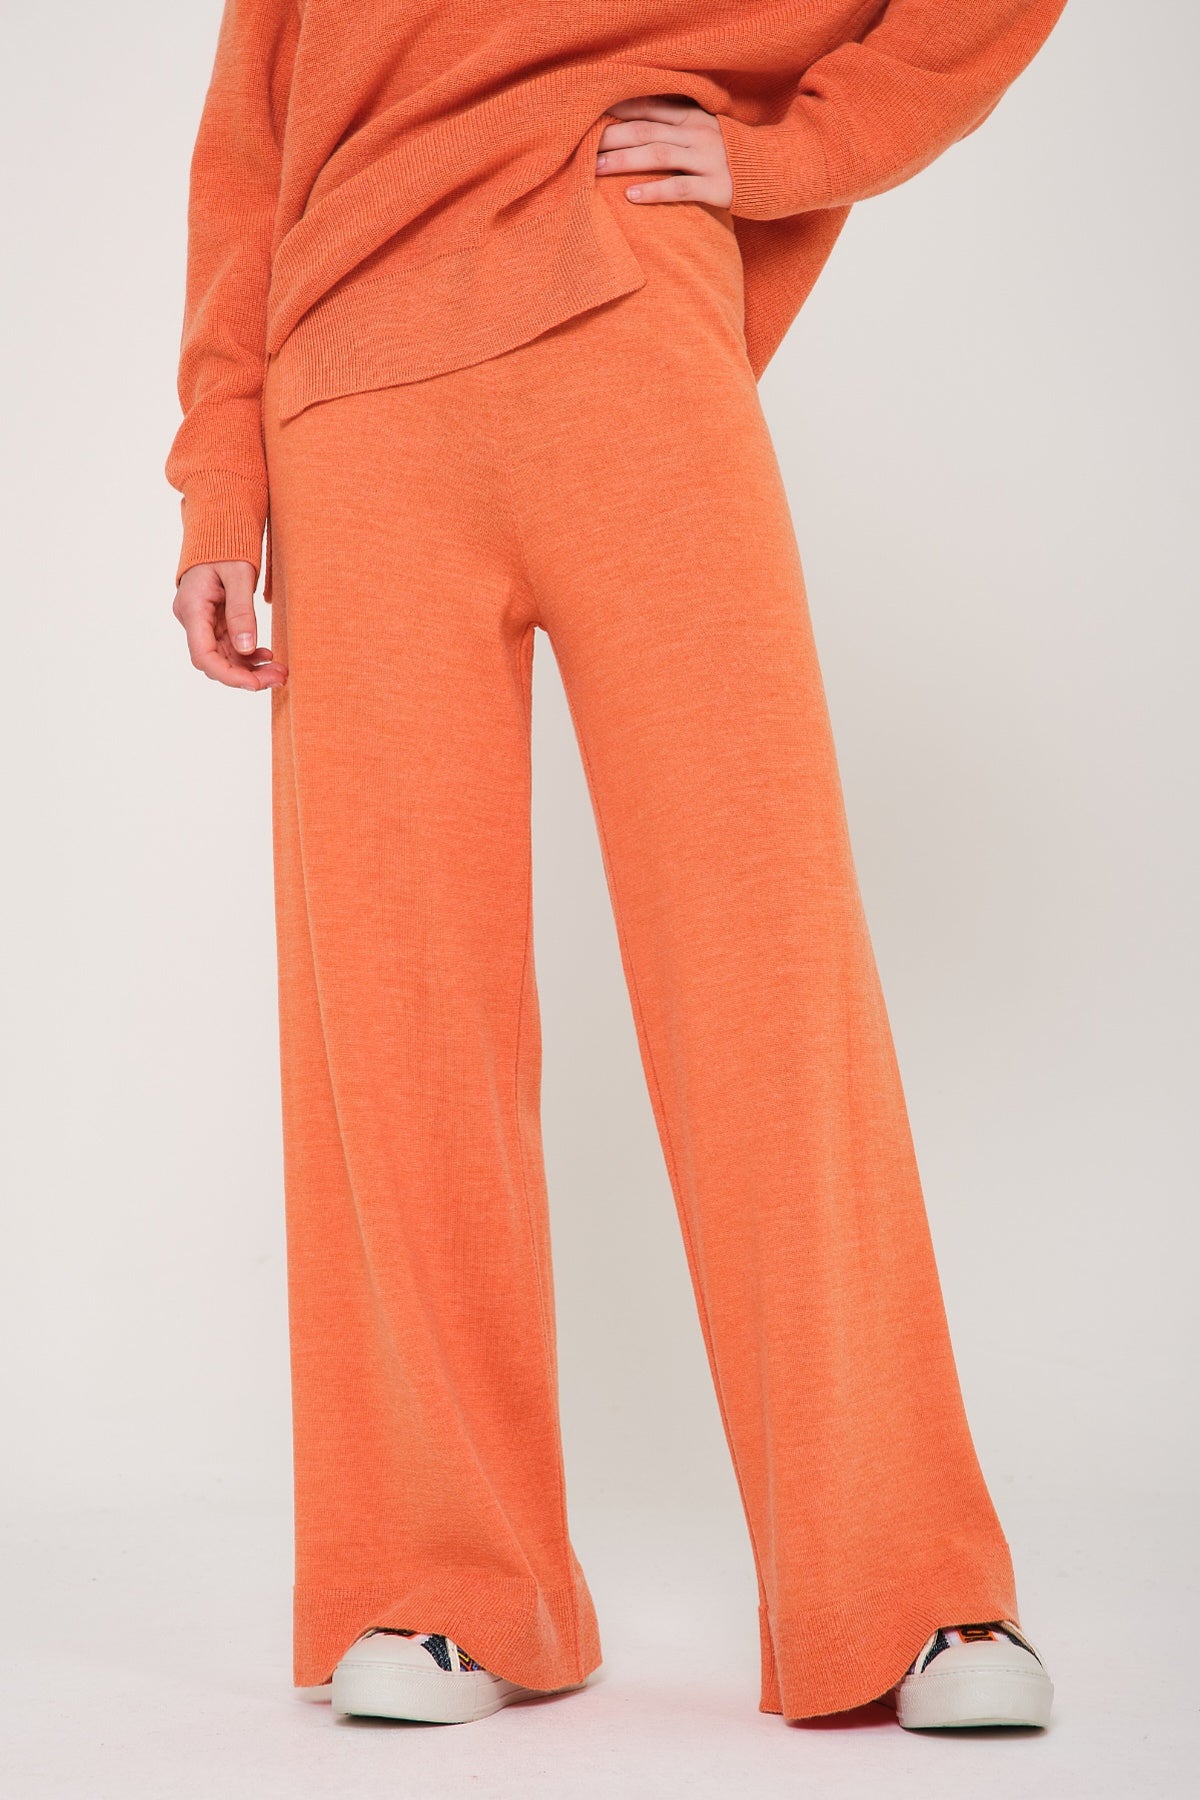 Peach Color Knit Sweater & Pants Set